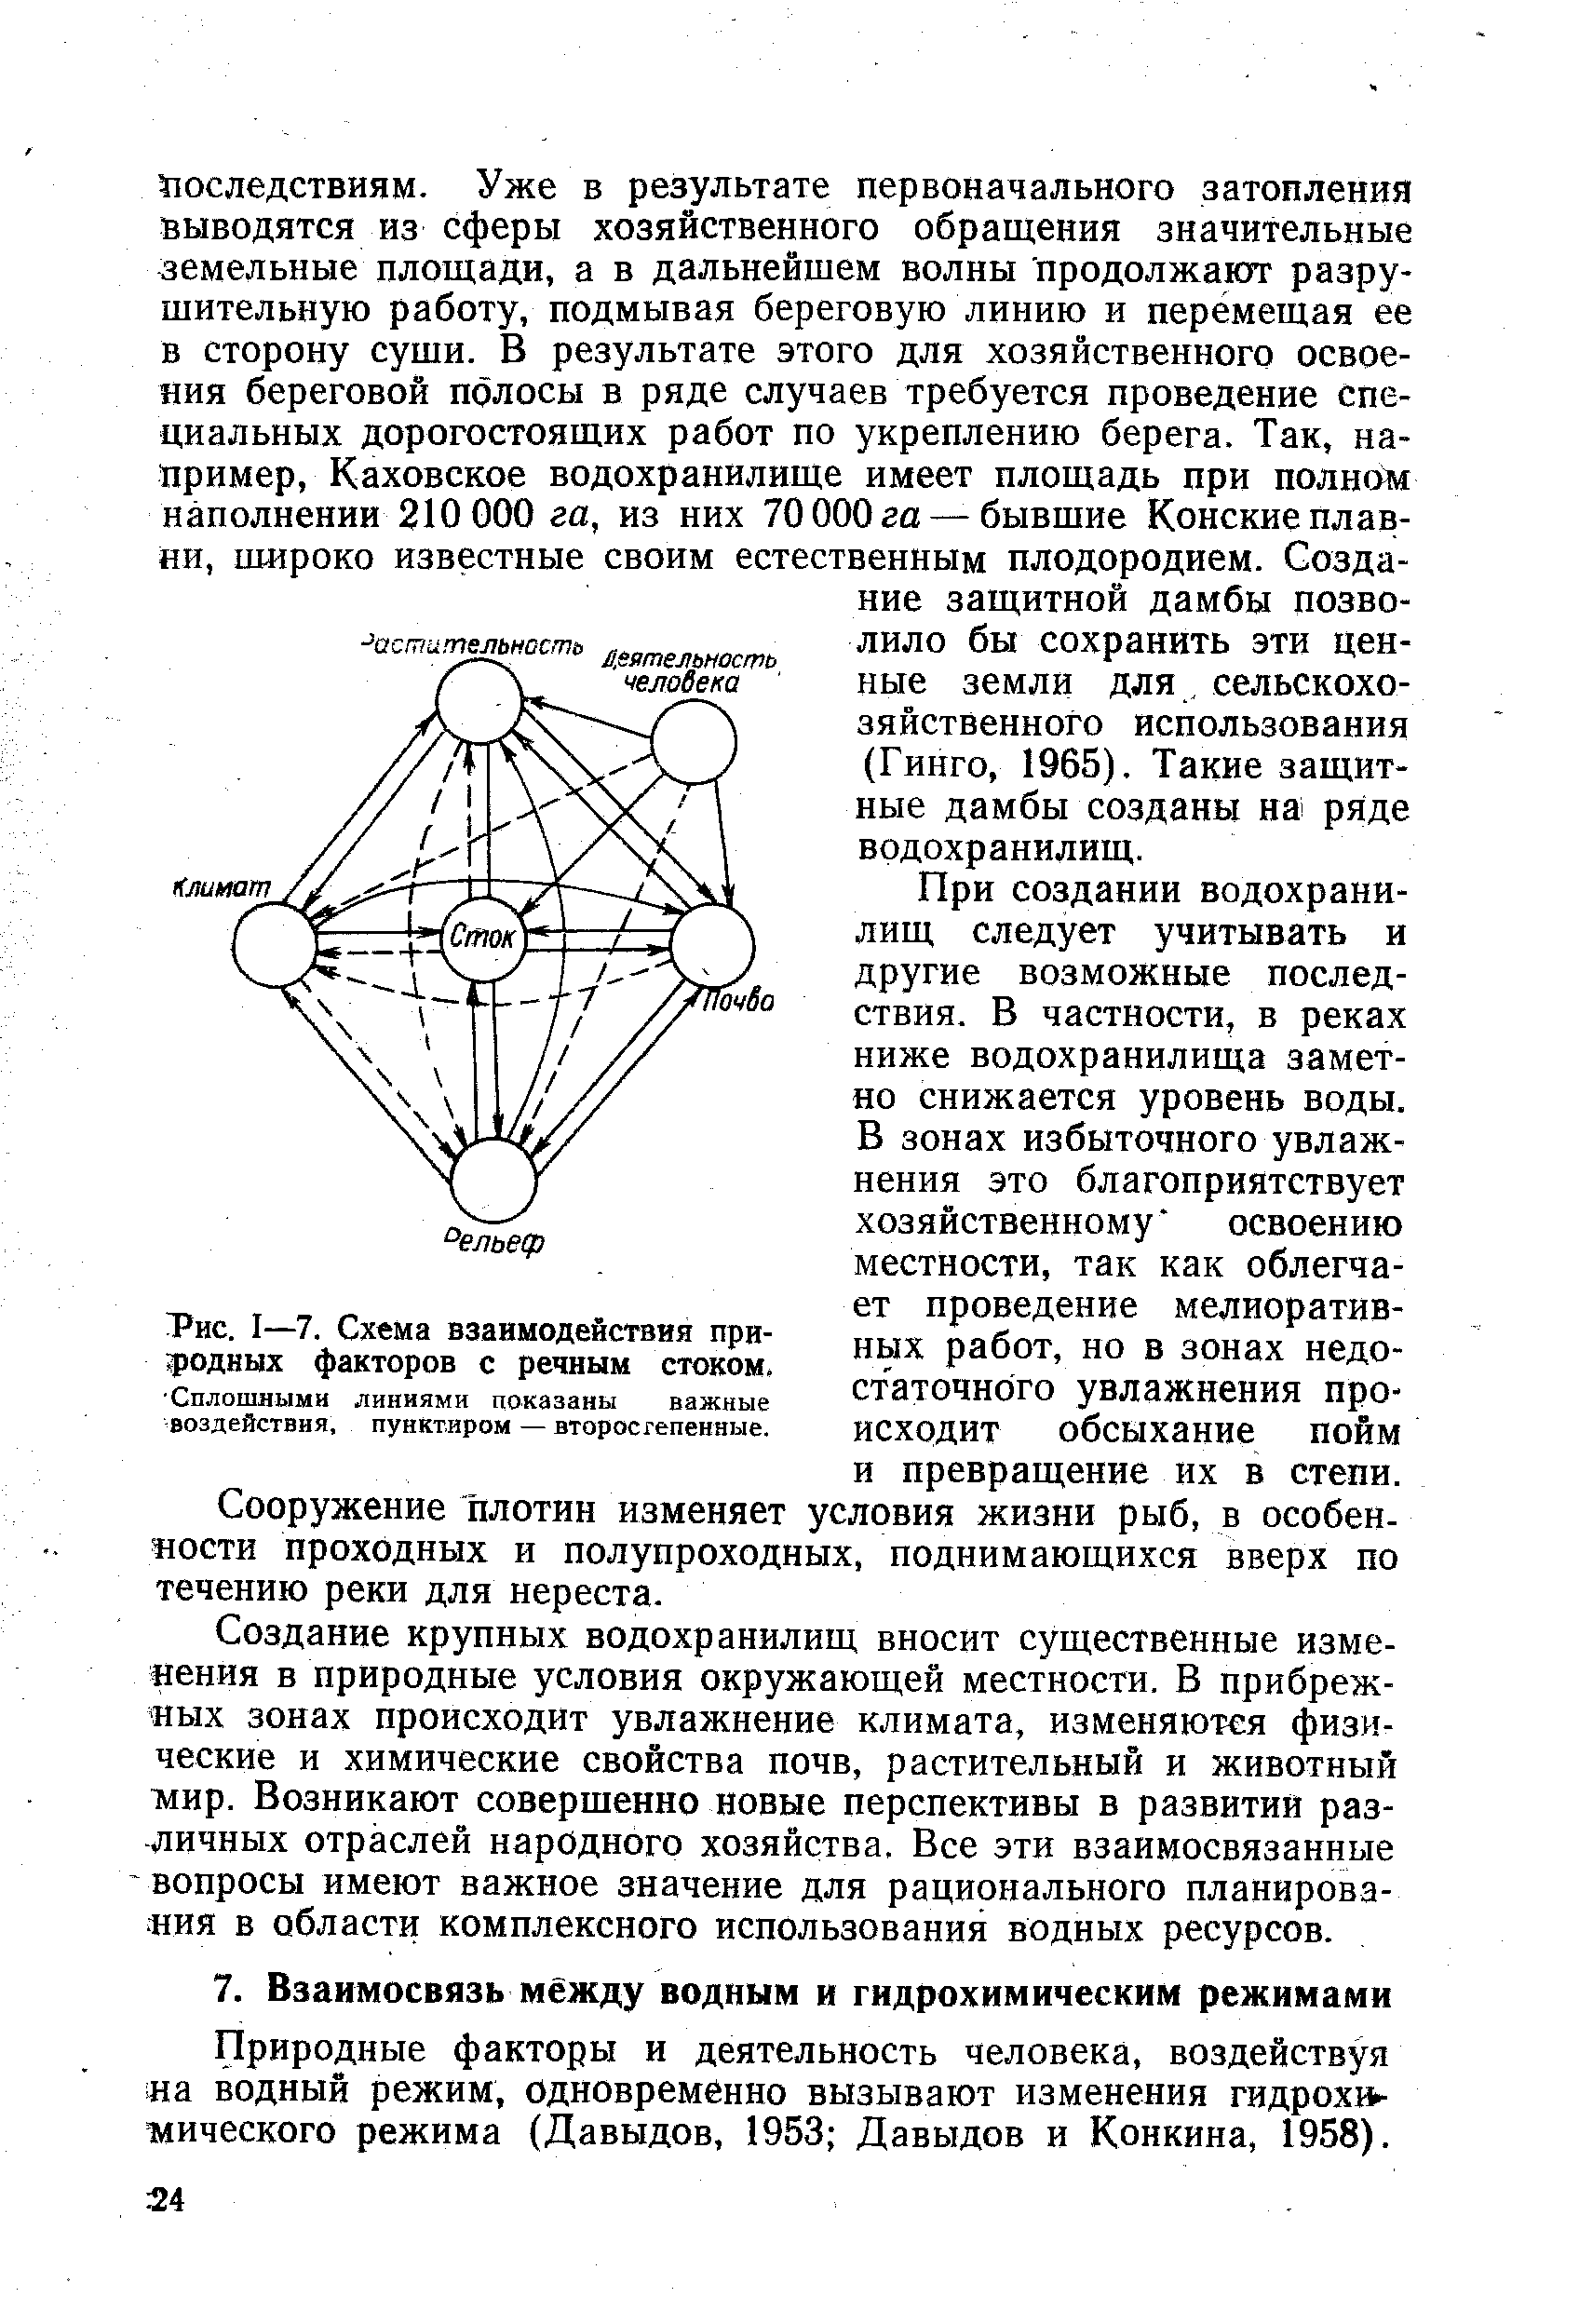 Природные факторы и деятельность человека, воздействуя иа водный режим, одновременно вызывают изменения гидрохимического режима (Давыдов, 1953 Давыдов и Конкина, 1958).